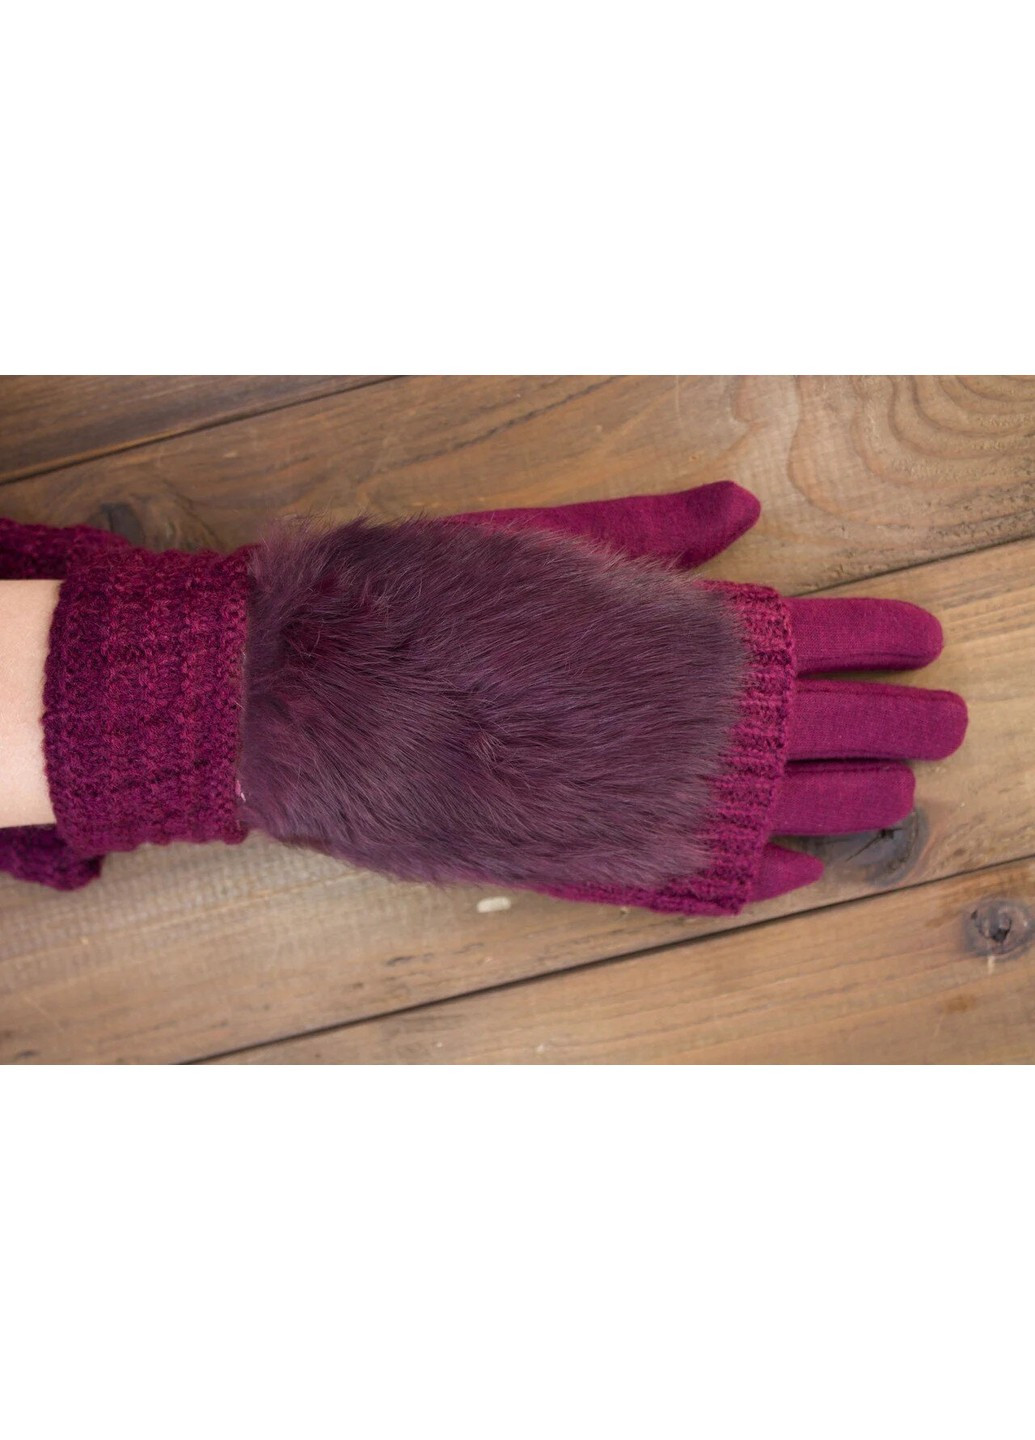 Женские перчатки комбинированные стрейч+вязка бордовые 1973s1 S BR-S (261486834)